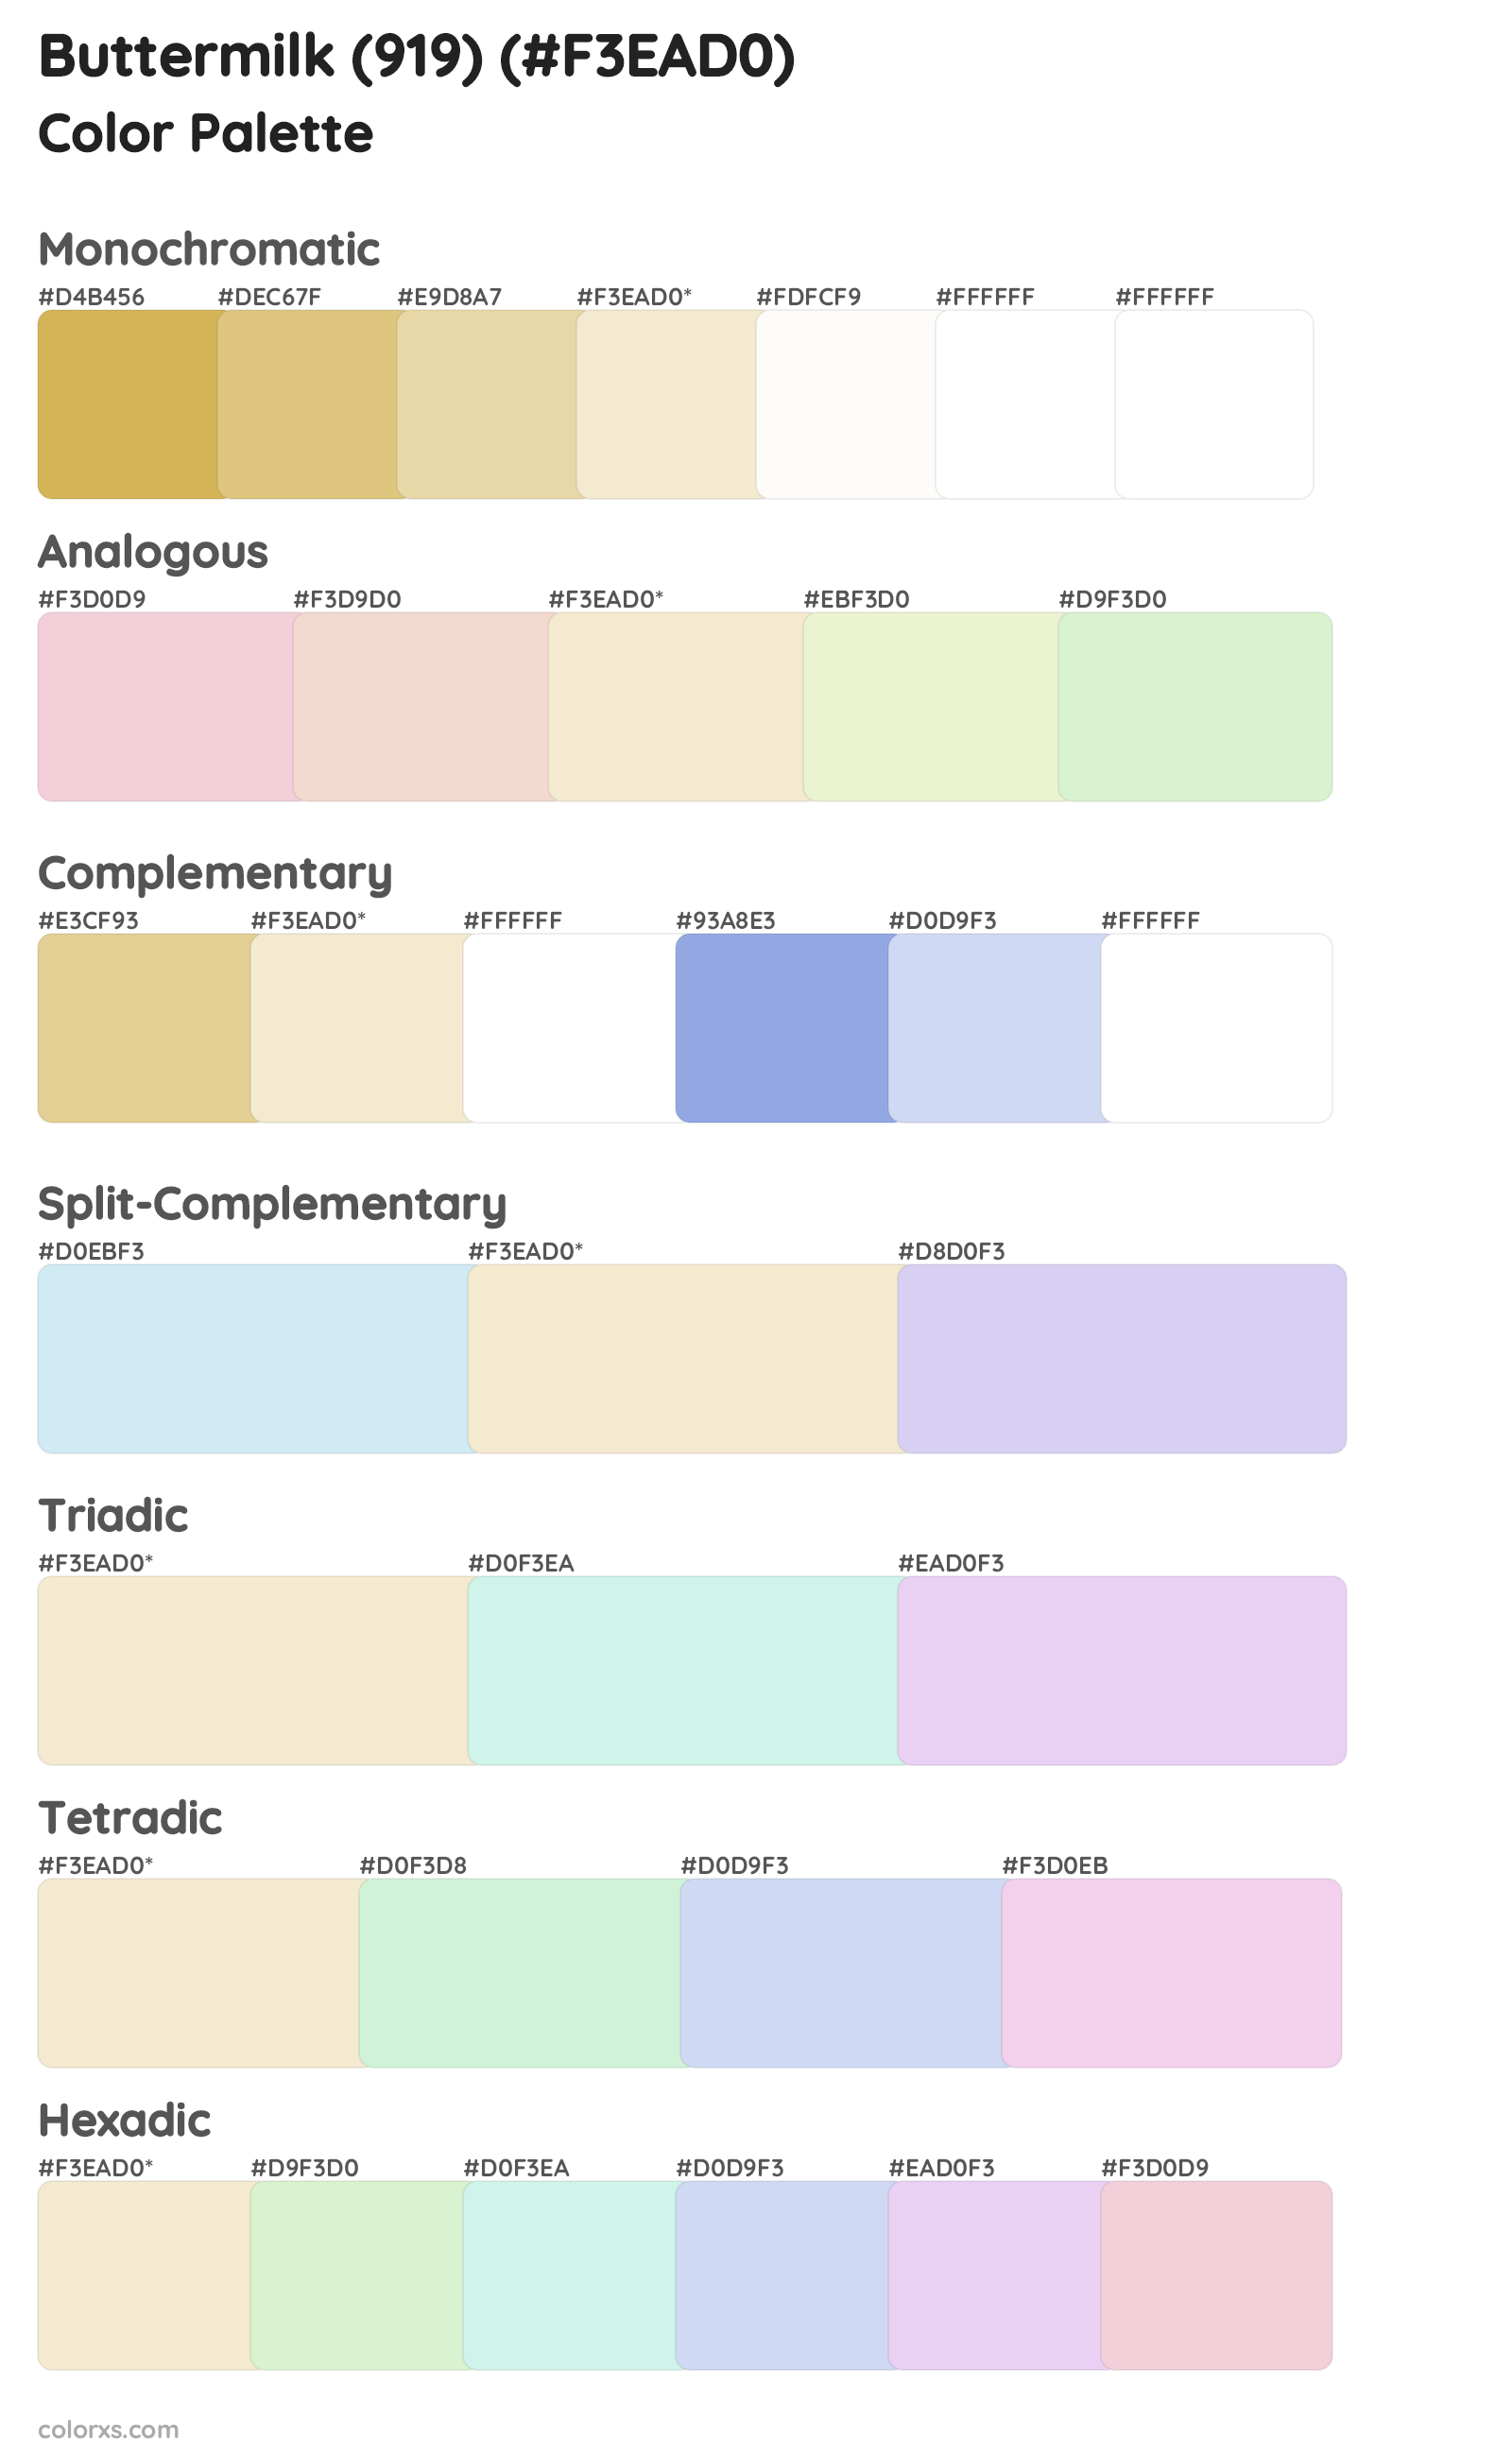 Buttermilk (919) Color Scheme Palettes